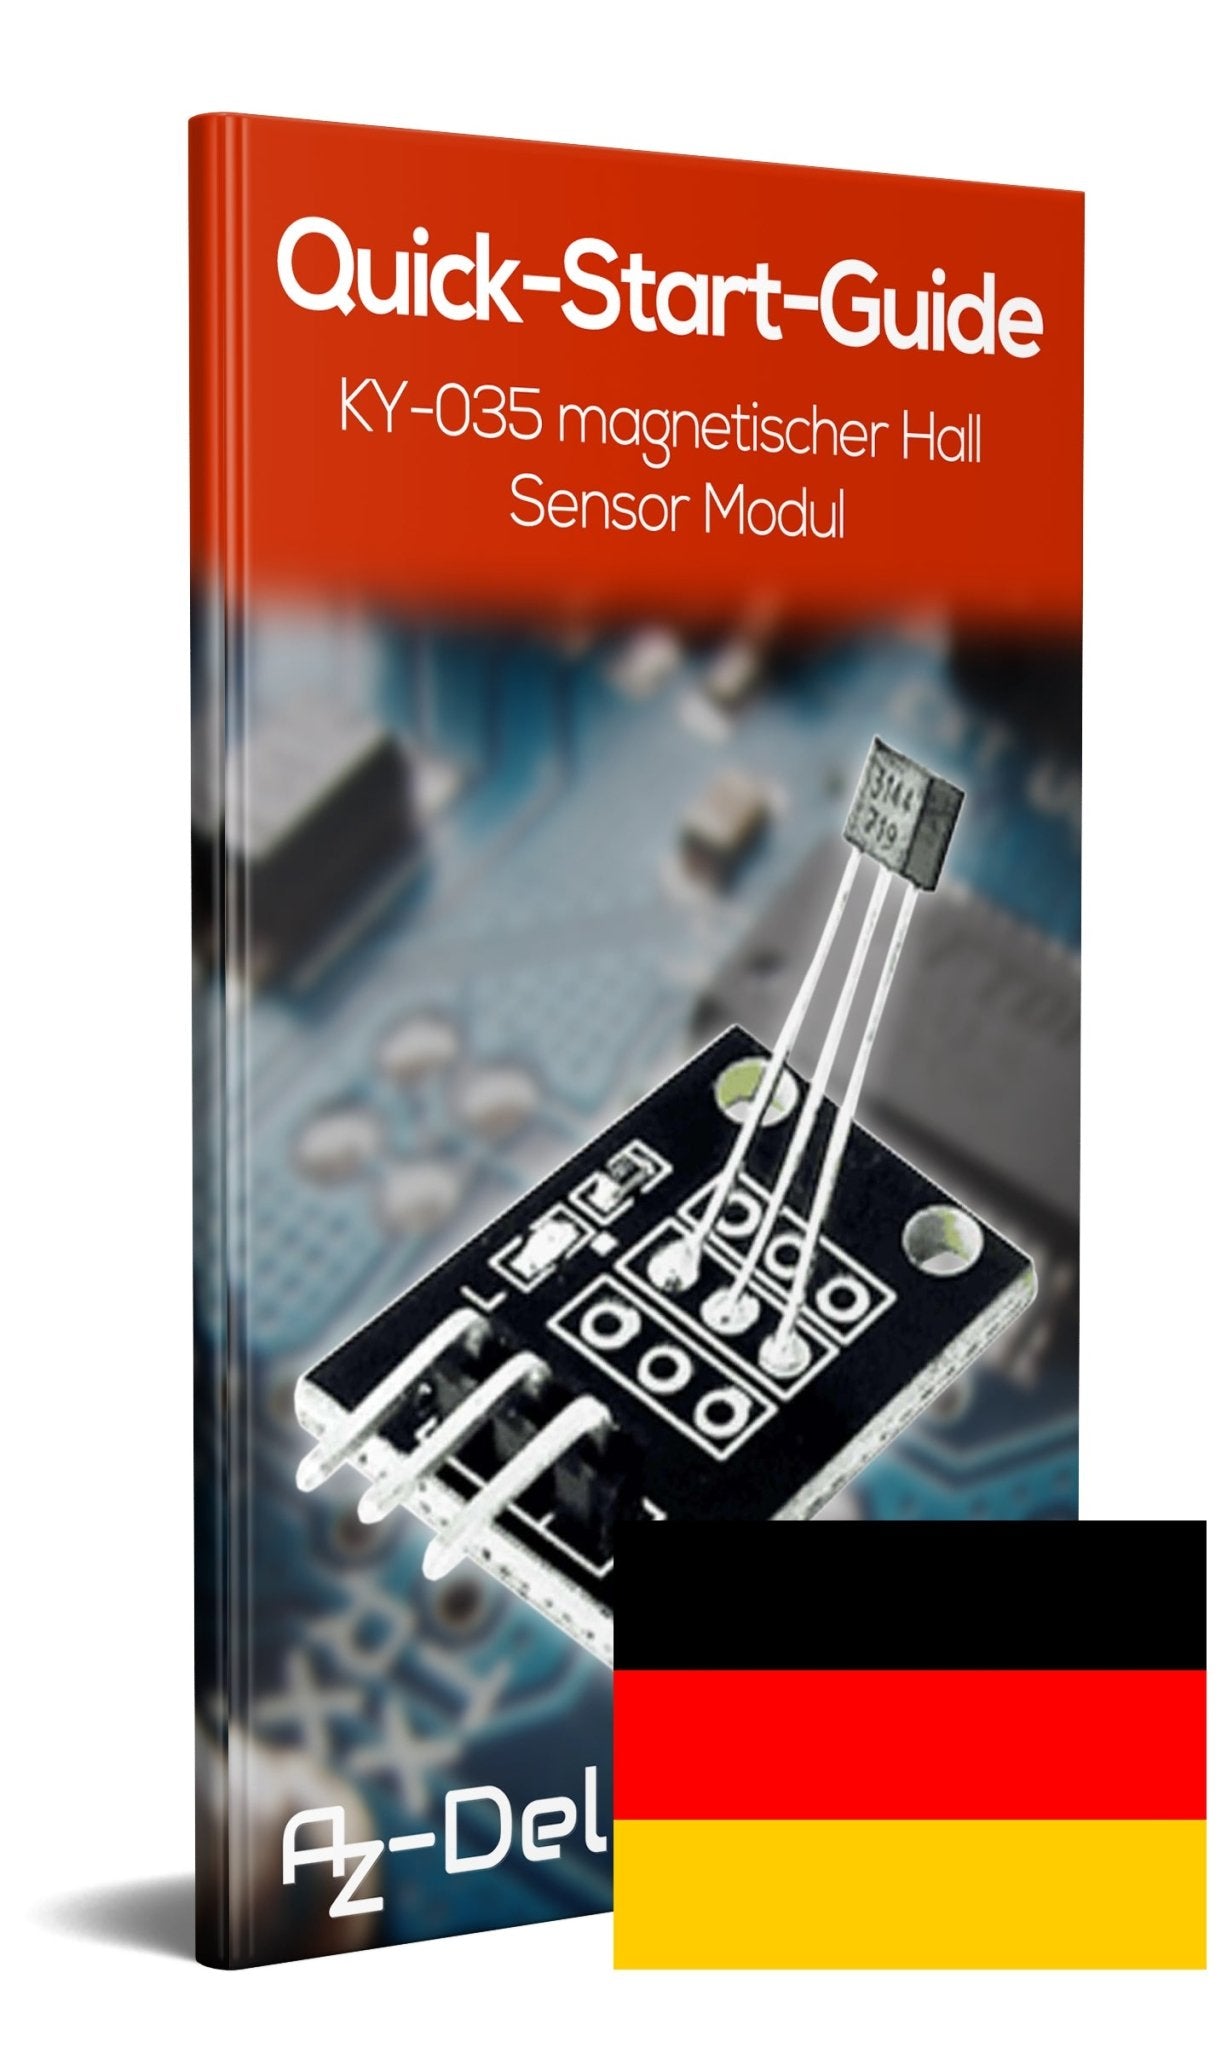 KY-035 magnetischer Hall Sensor Modul analog - AZ-Delivery